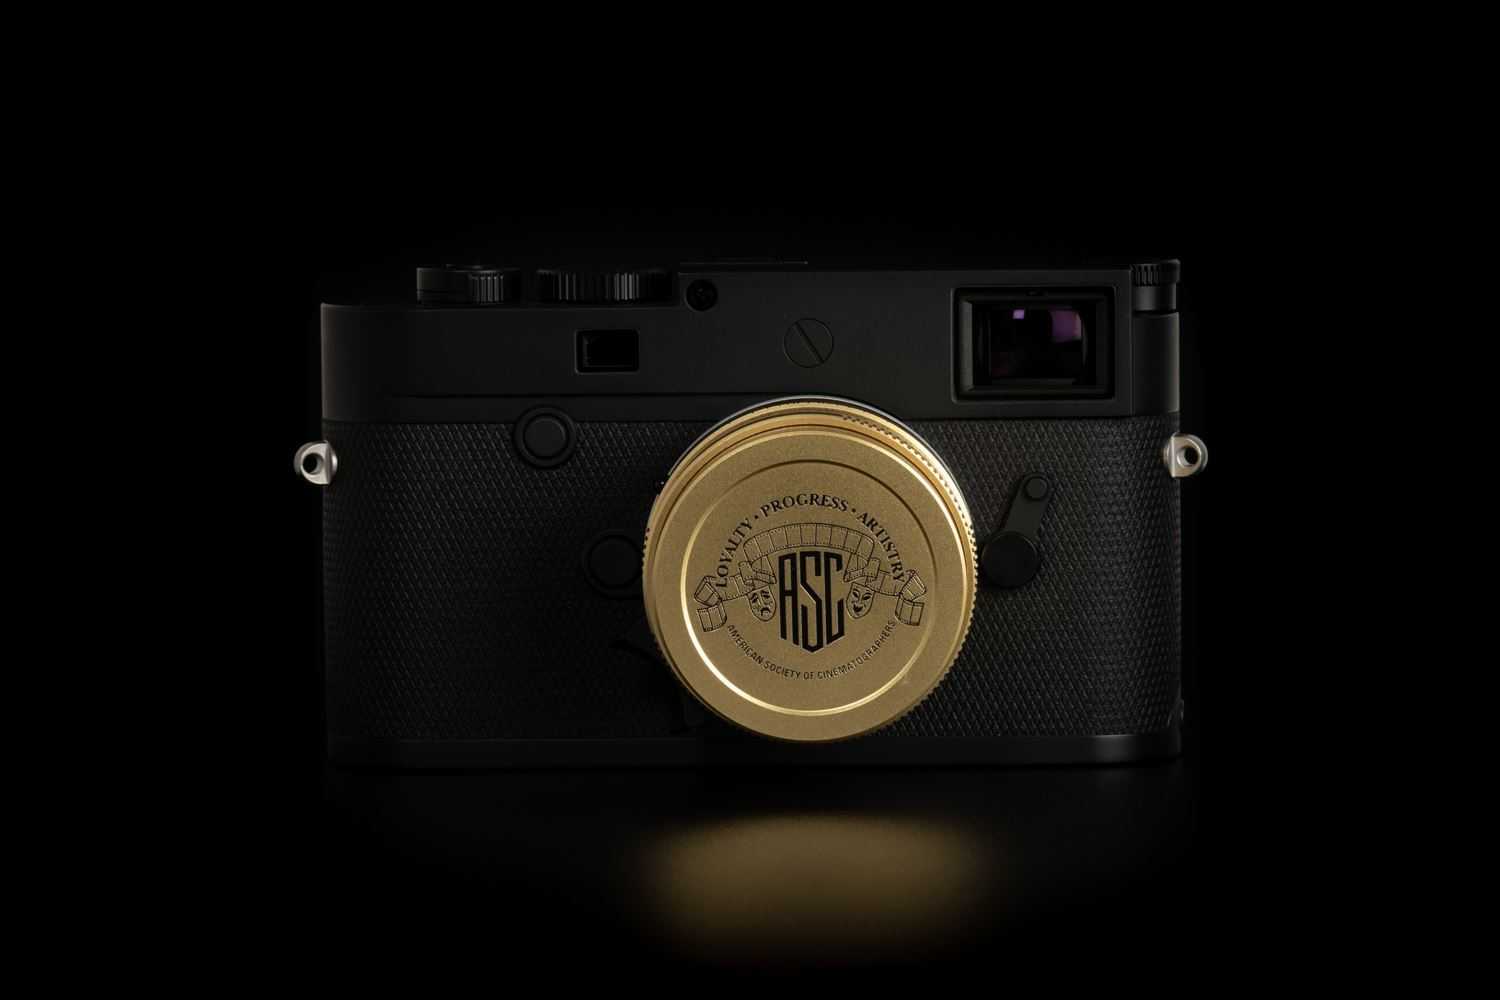 11 лучших фотоаппаратов leica — рейтинг 2019 года